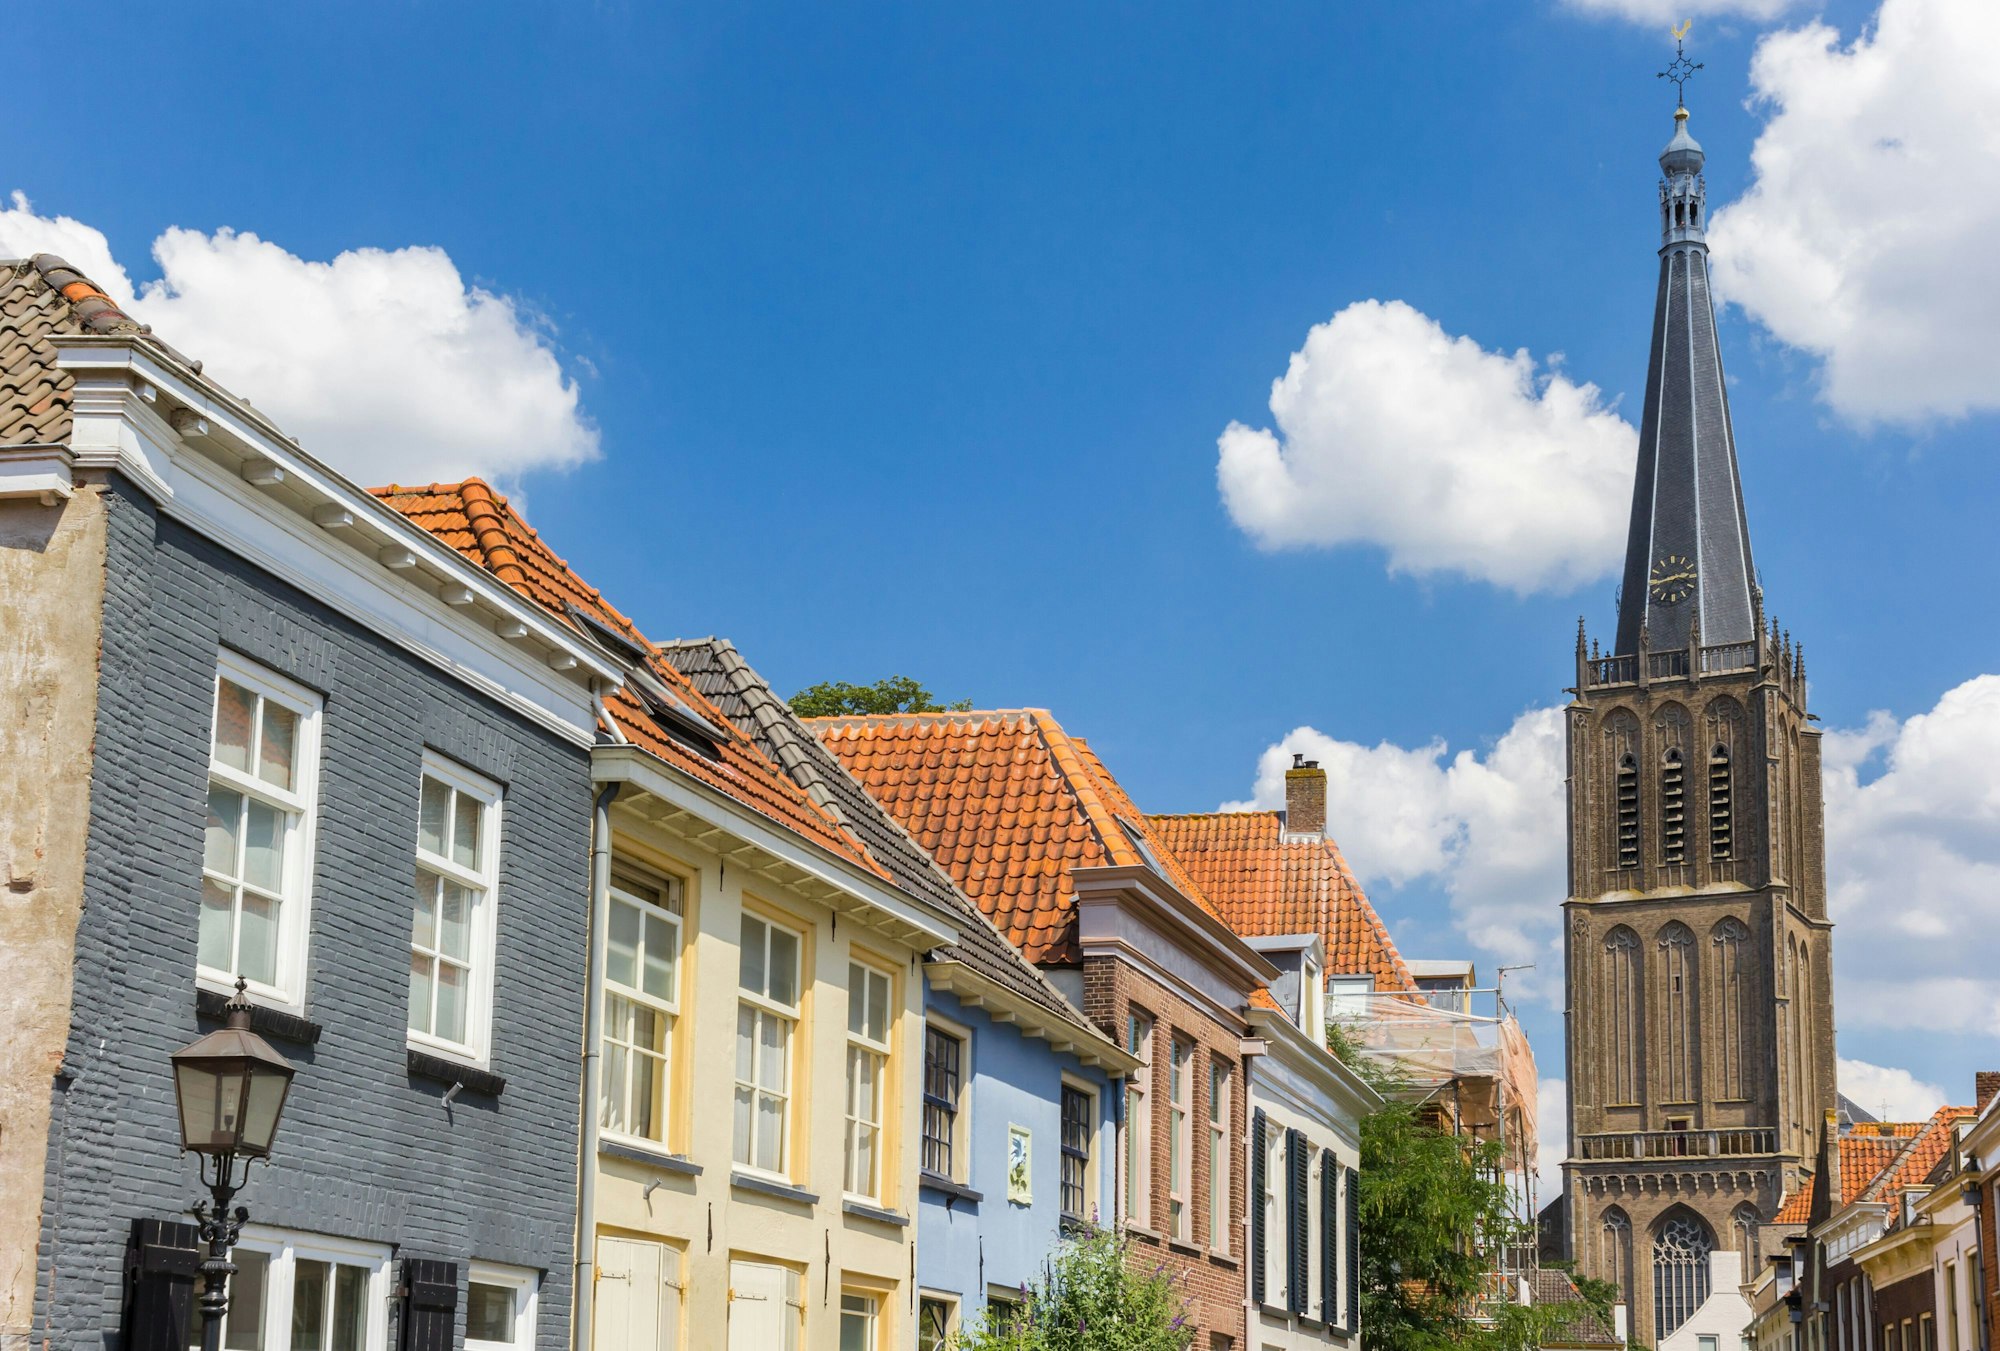 Turm der Martini-Kirche und alte Häuser in Doesburg, Niederlande.